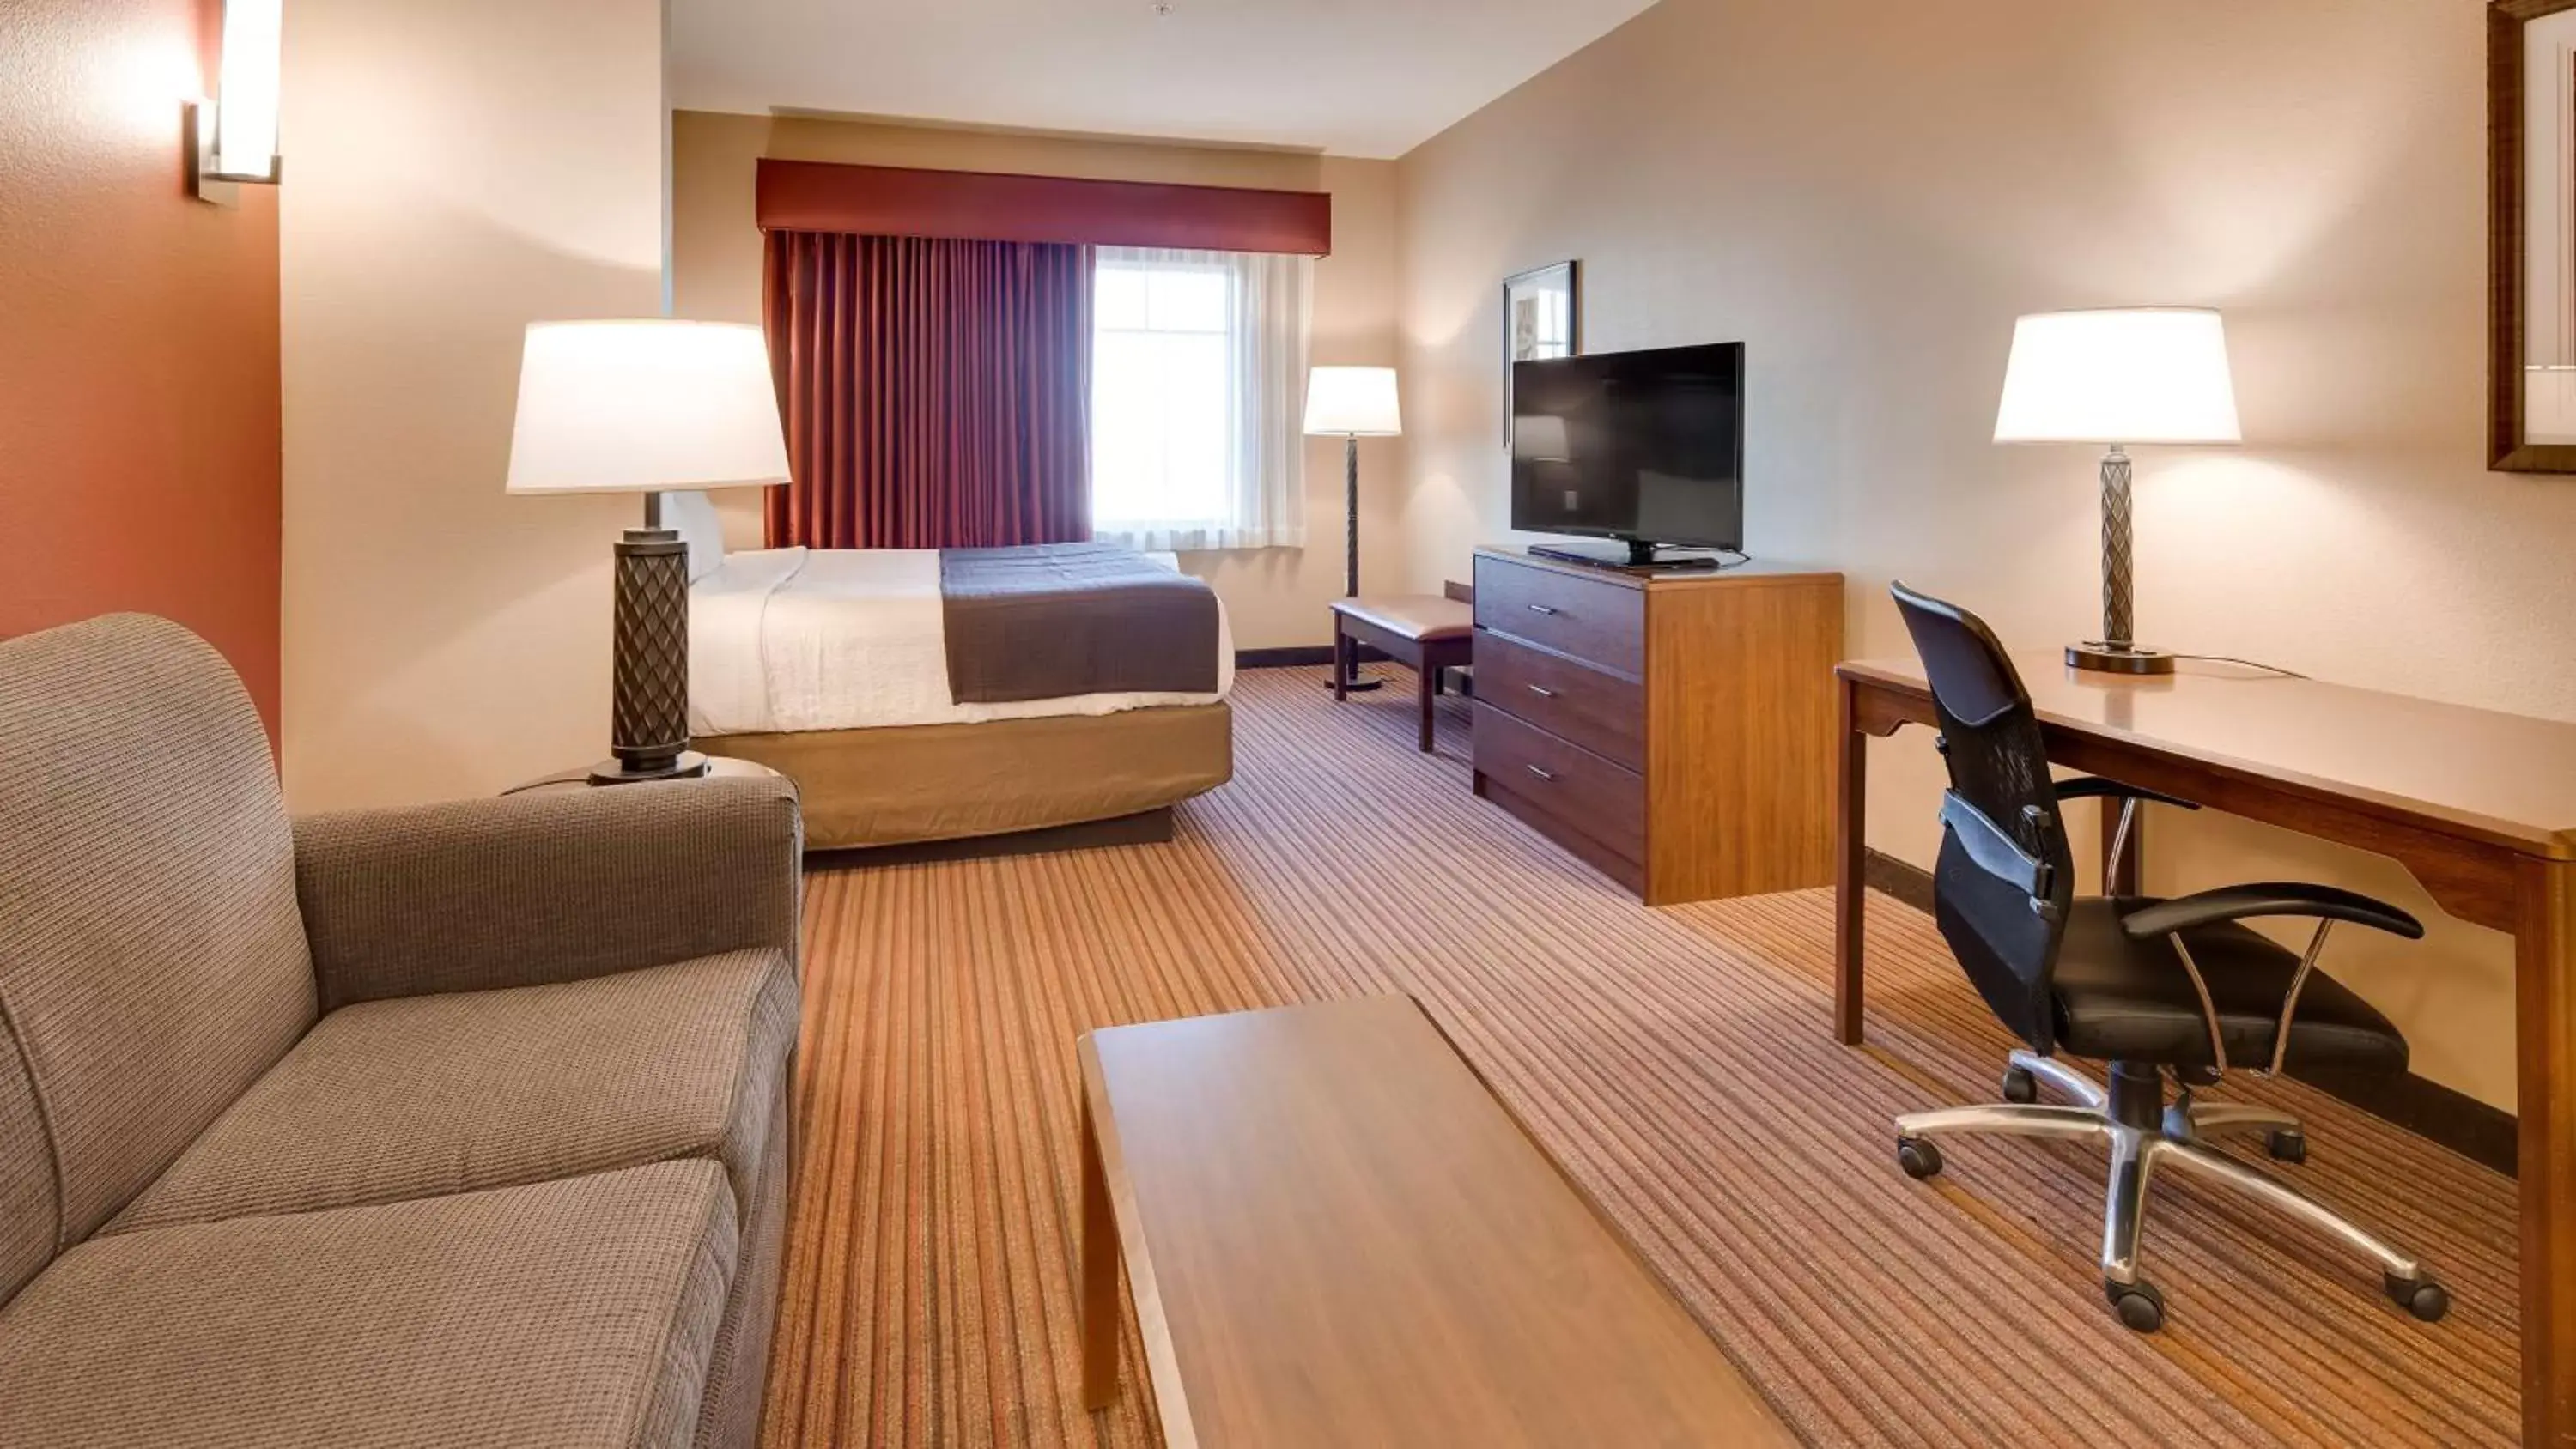 Bedroom, Seating Area in Best Western Plus Chandler Hotel & Suites